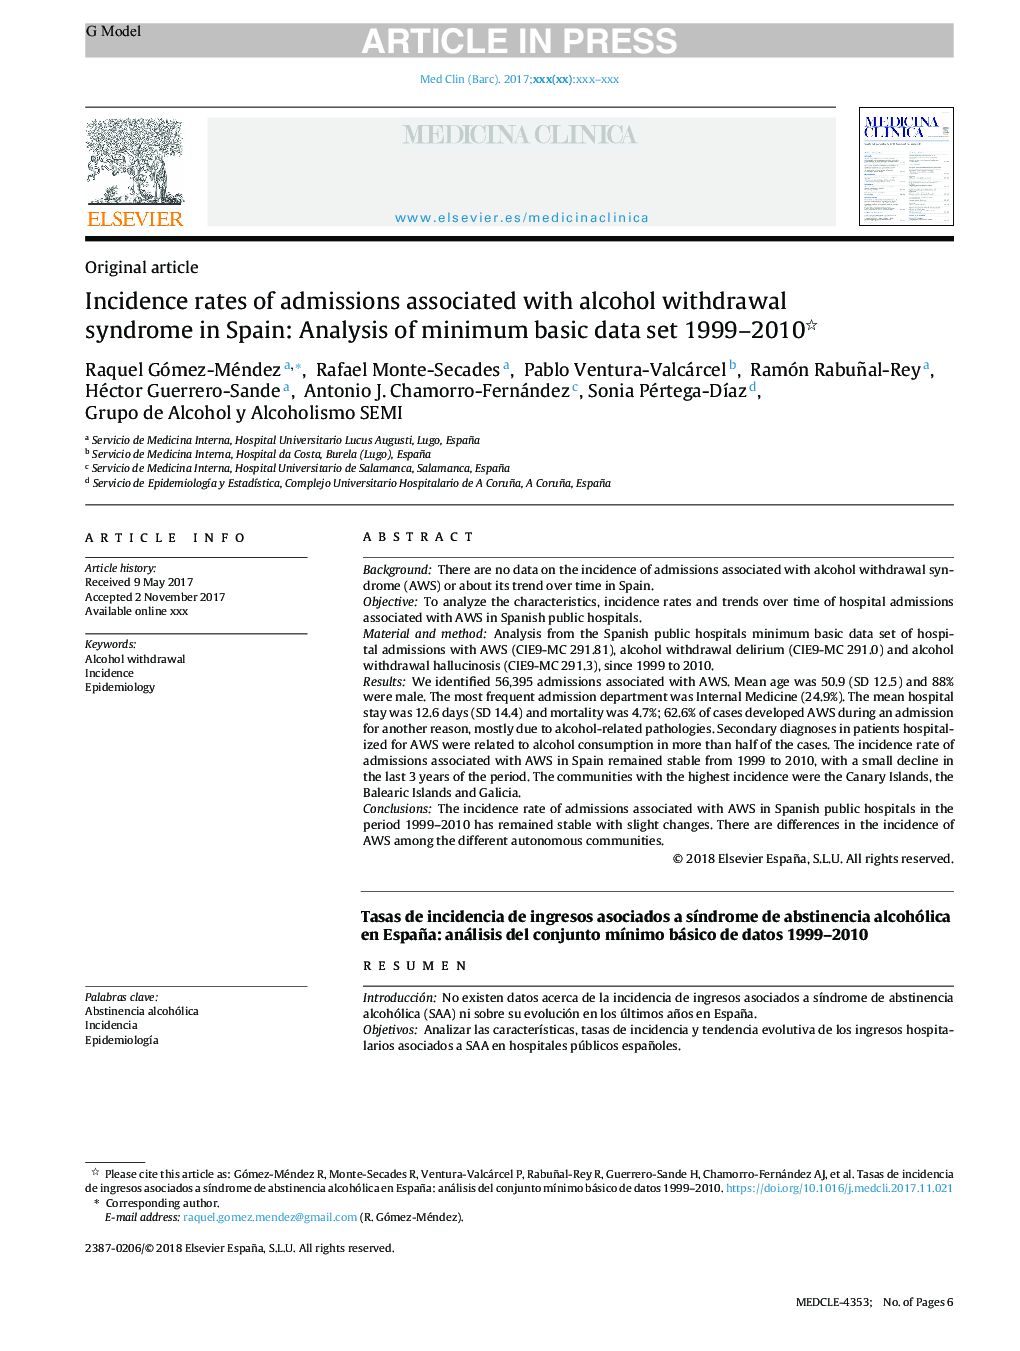 میزان بروز پذیرش در ارتباط با سندروم برداشت الکل در اسپانیا: تجزیه و تحلیل حداقل داده های اساسی مجموعه 1999-2010